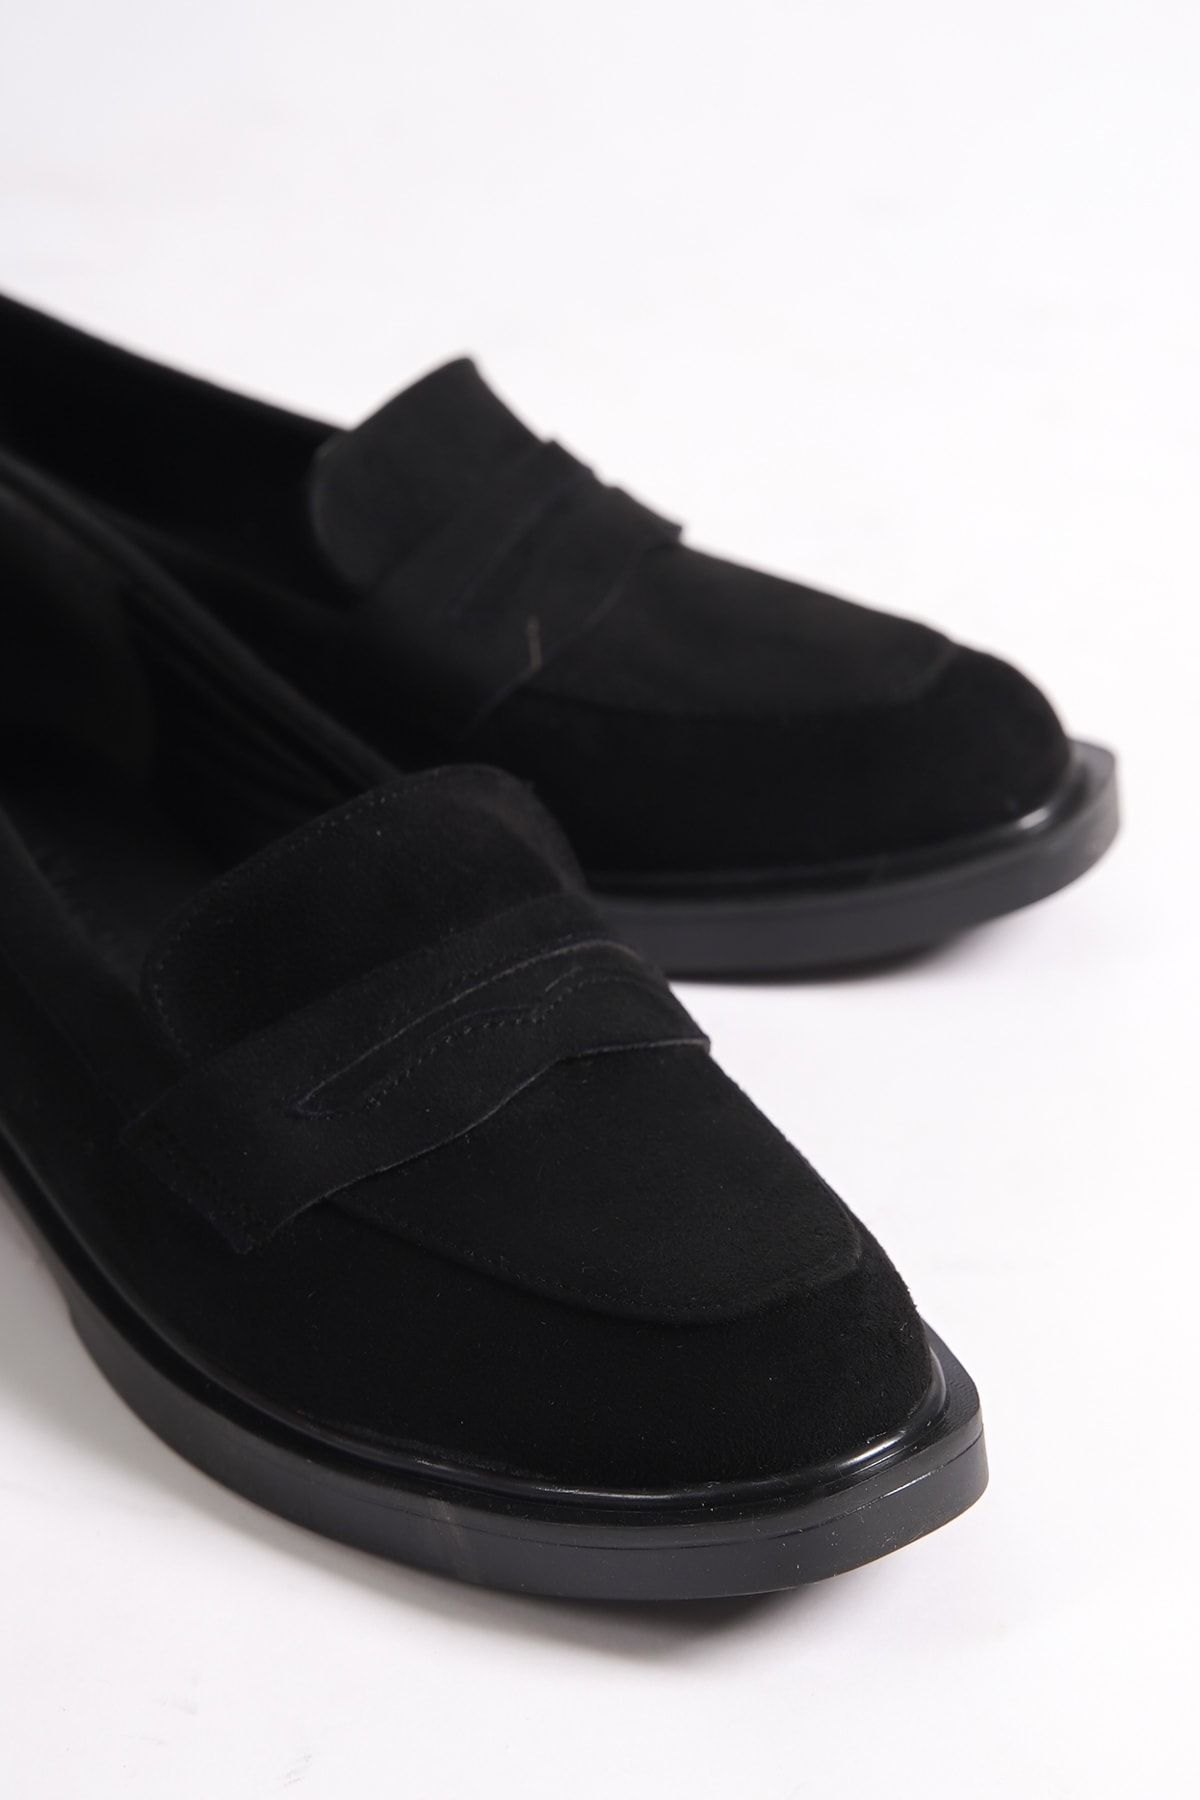 Shoesers Kadın Loafer Fiyonk Detaylı Süet Makosen Günlük Ayakkabı Siyah (KALIPLAR 1 NUMARA DARDIR.)